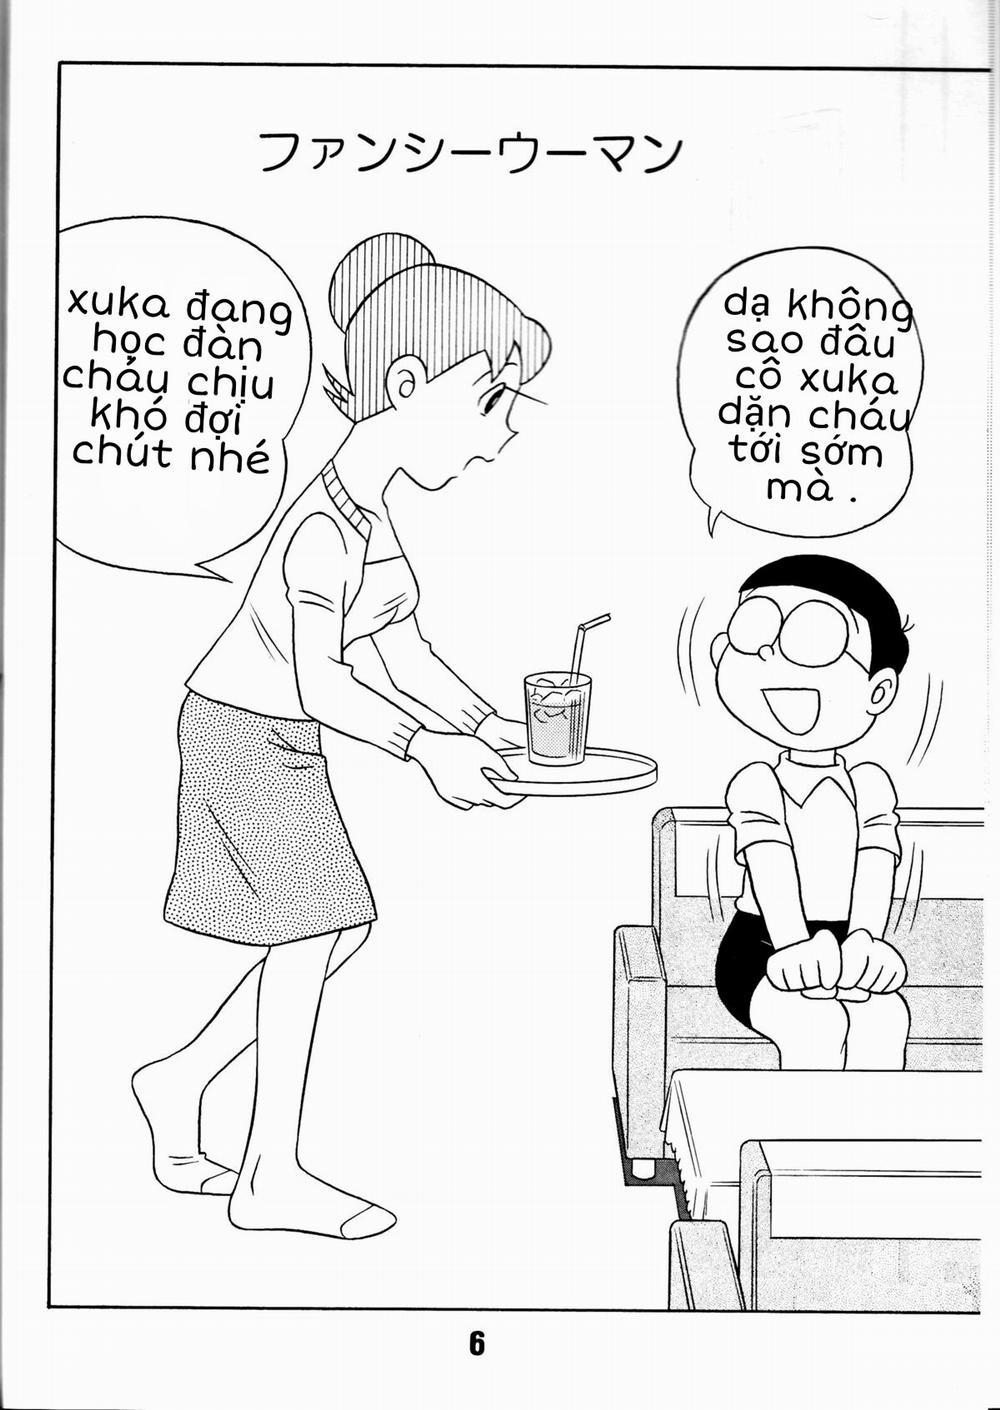 Tuyển Tập Doraemon Doujinshi 18+ Chương 7 Xuka v m g u Trang 2